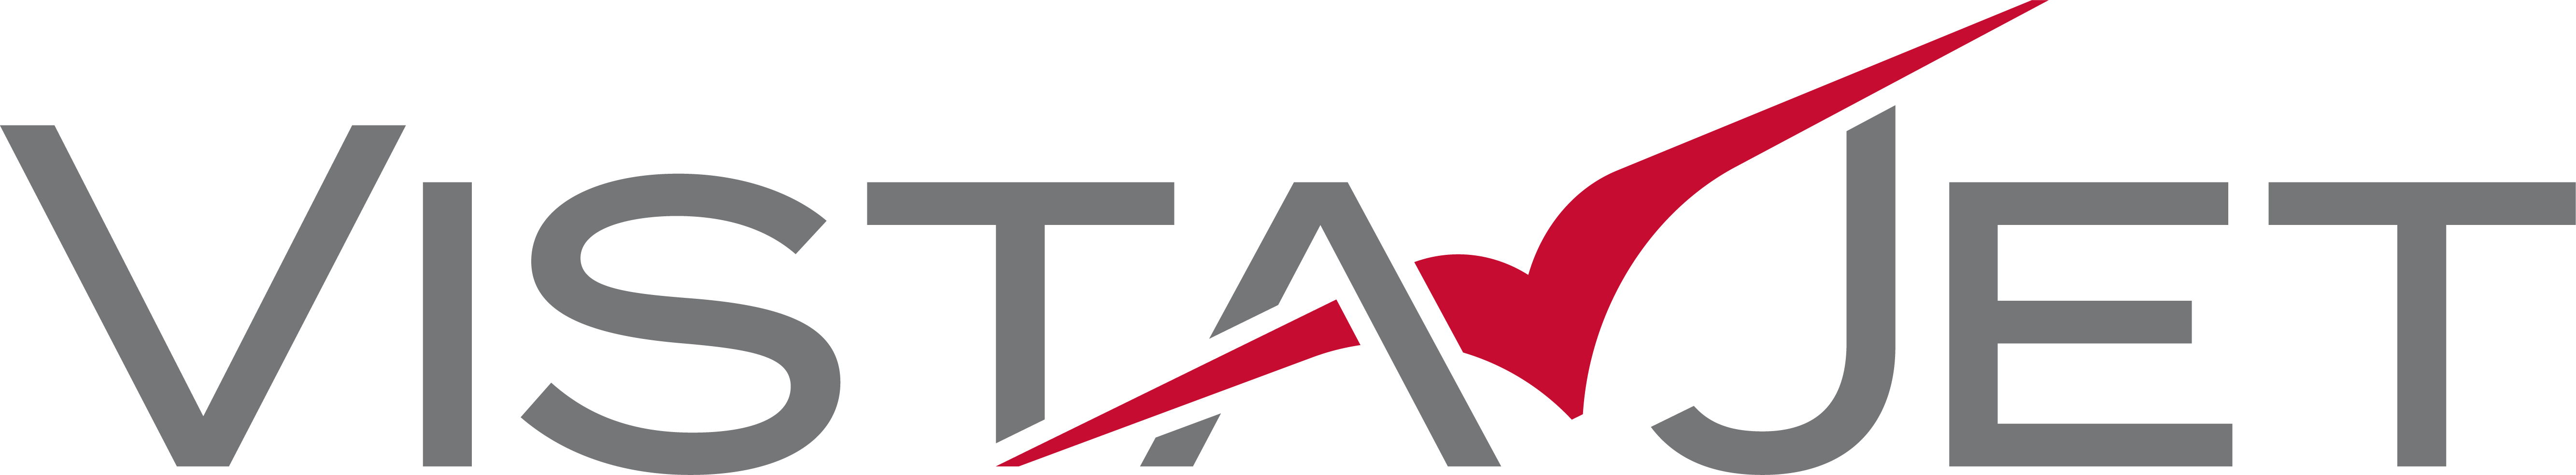 VistaJet logo